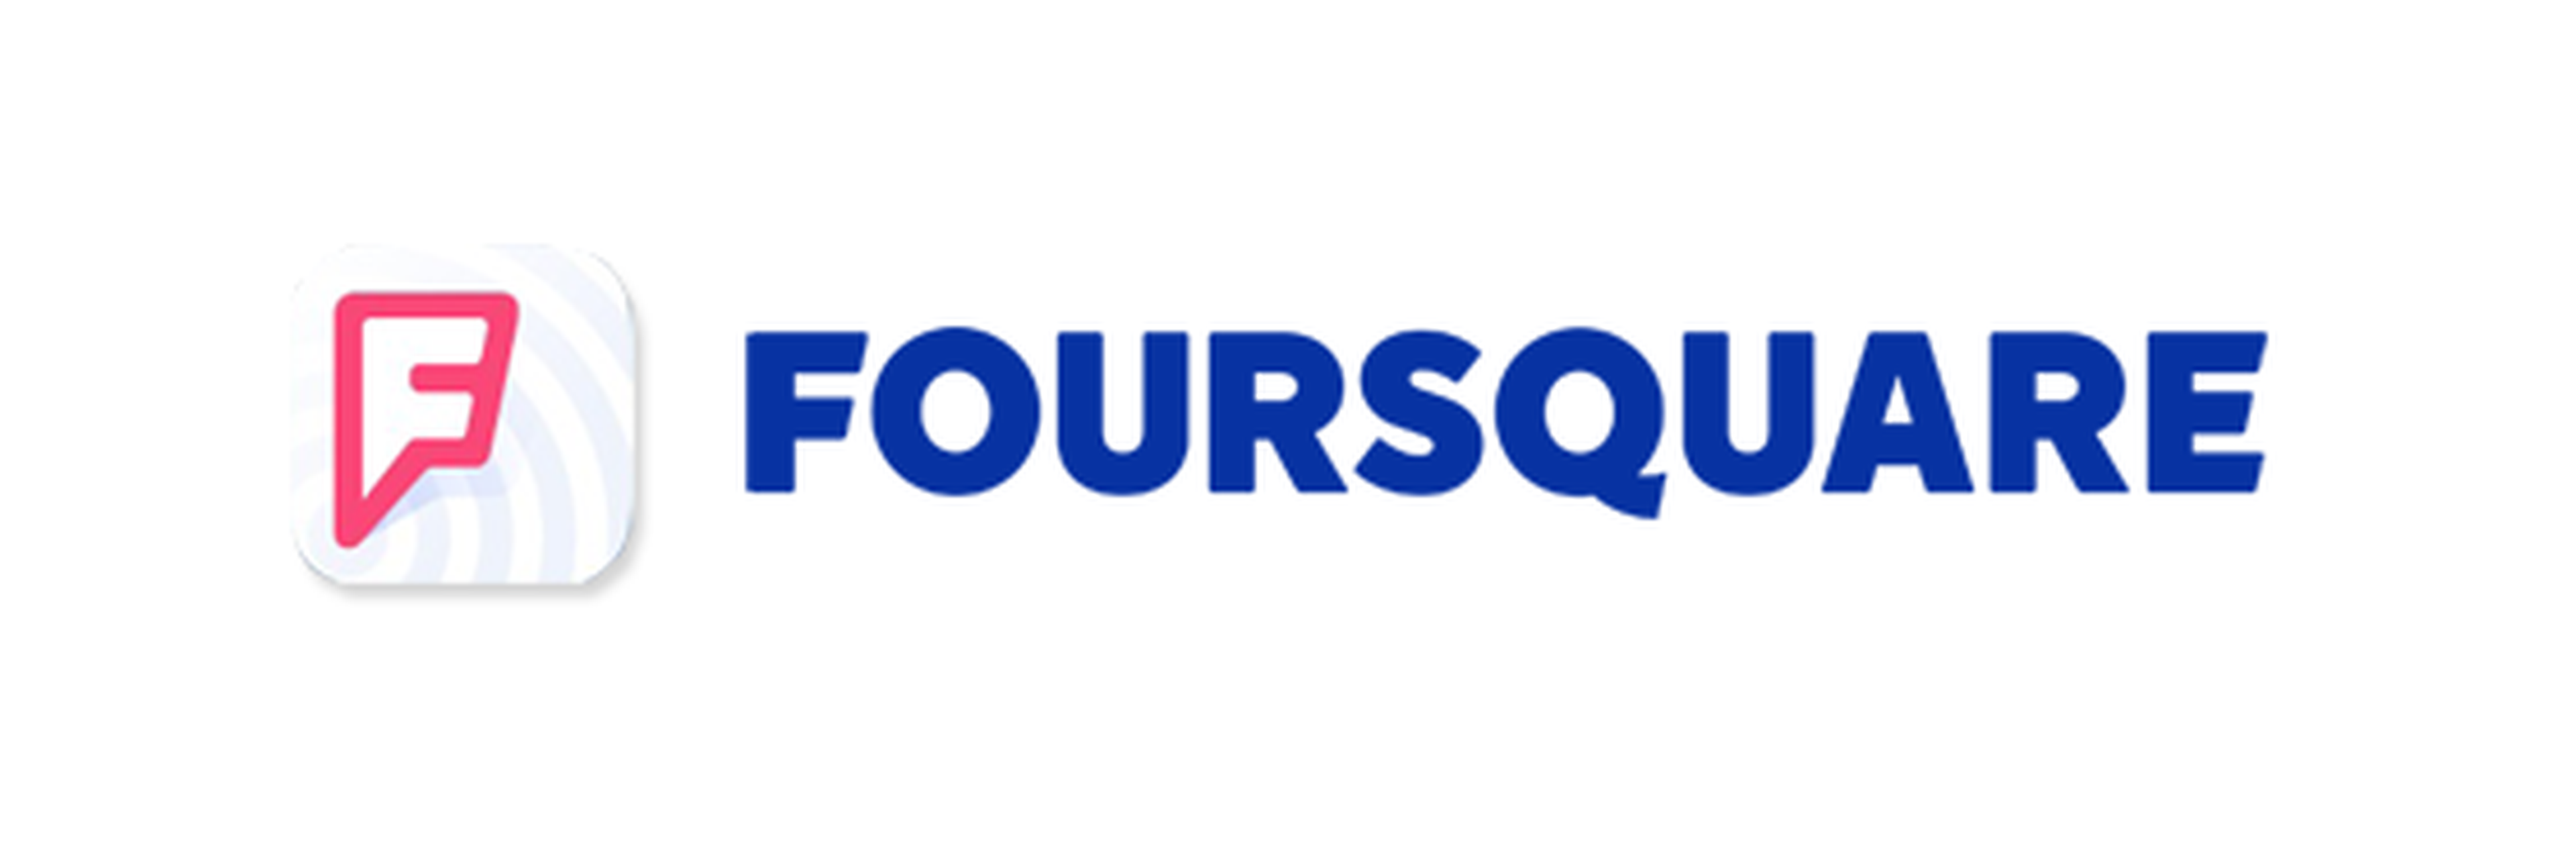 Foursquare logo nuevo